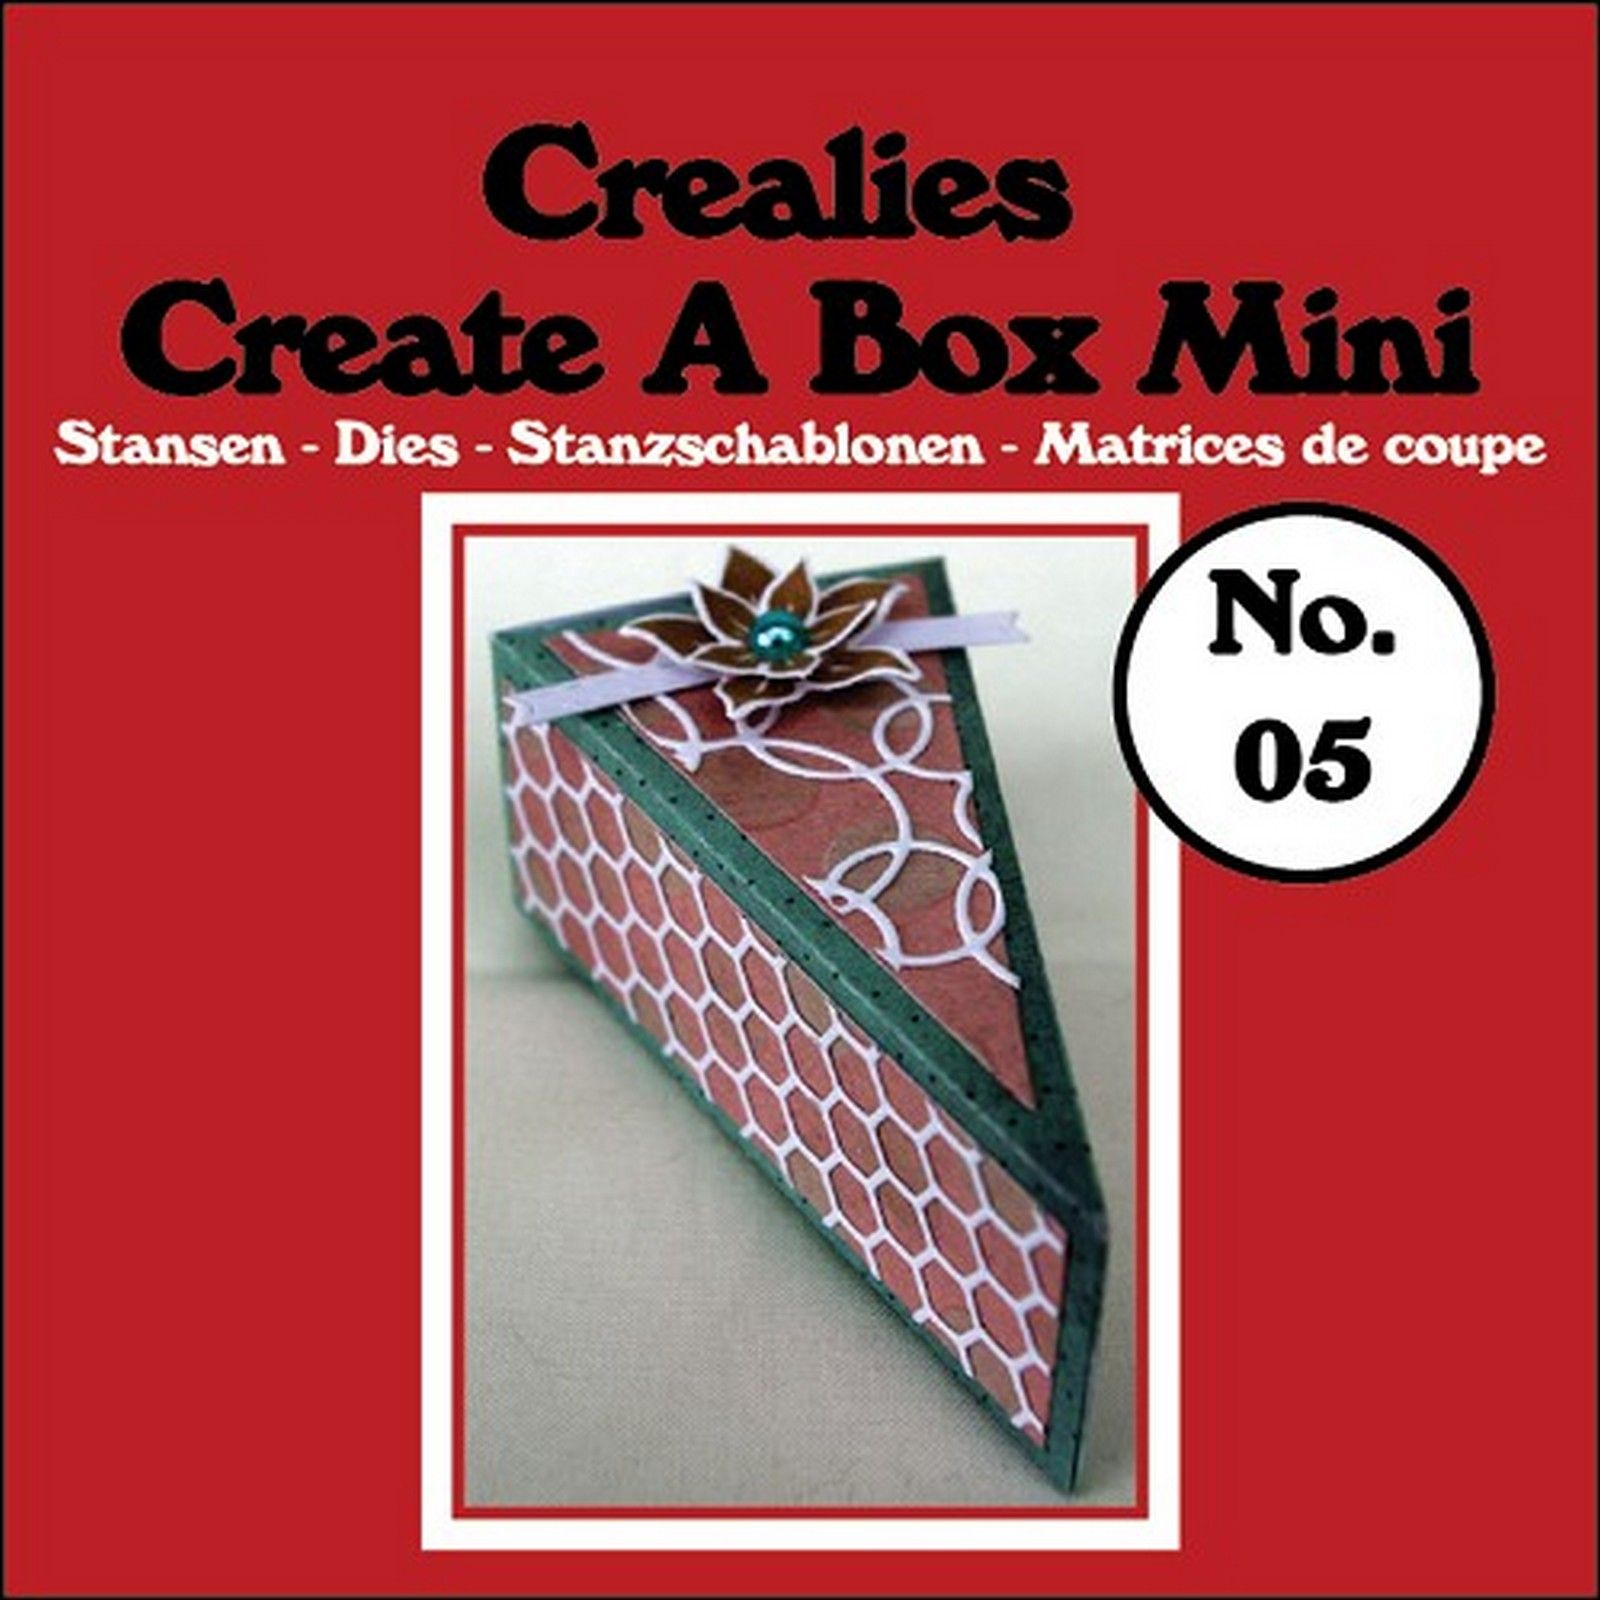 Crealies • Create A Box mini plantilla de corte no.05 Piece of cake